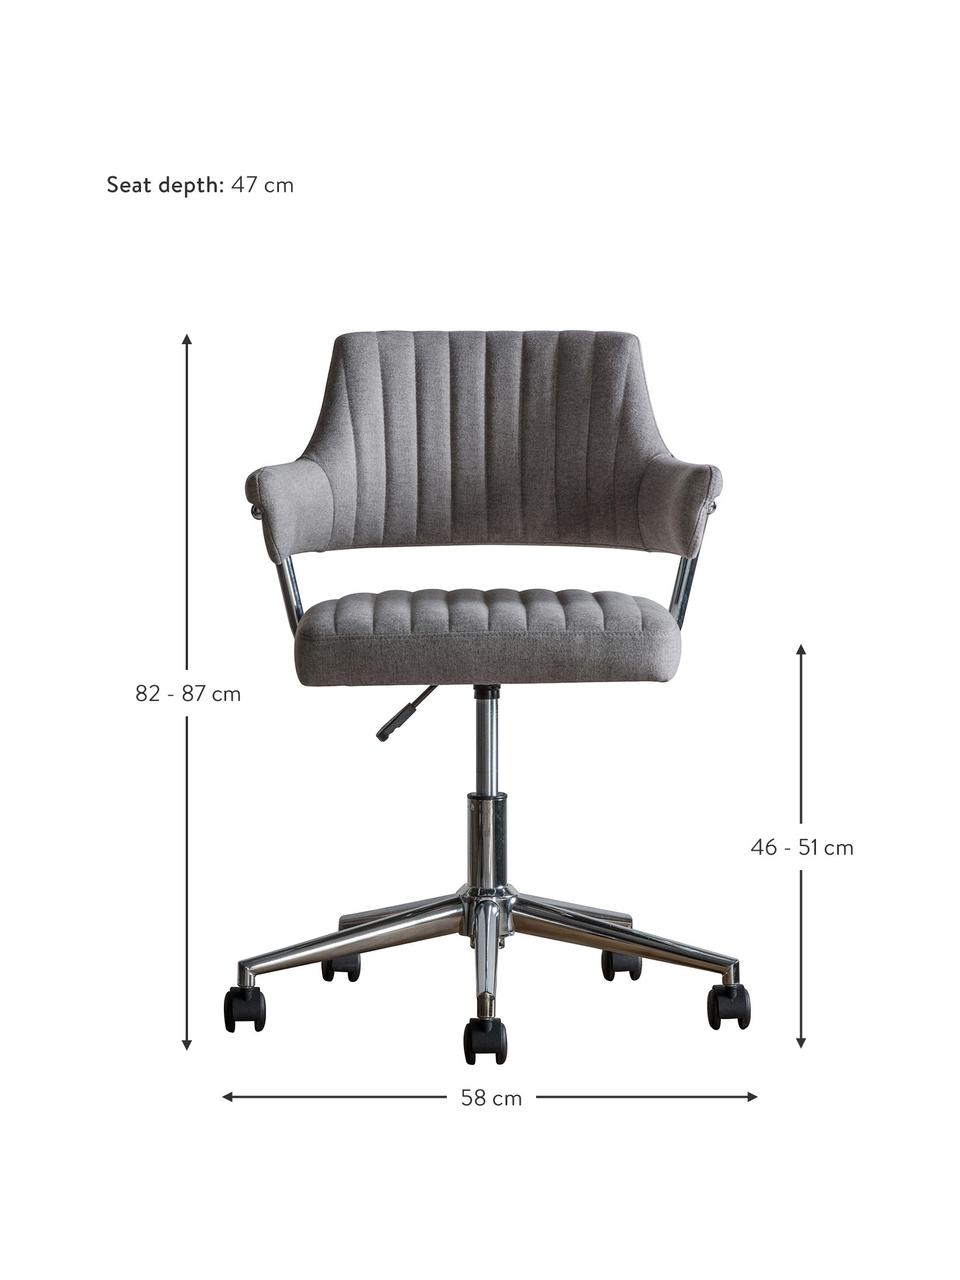 Krzesło biurowe McIntyre, obrotowe, Tapicerka: poliester, Nogi: metal galwanizowany, Szary, S 58 x G 54 cm